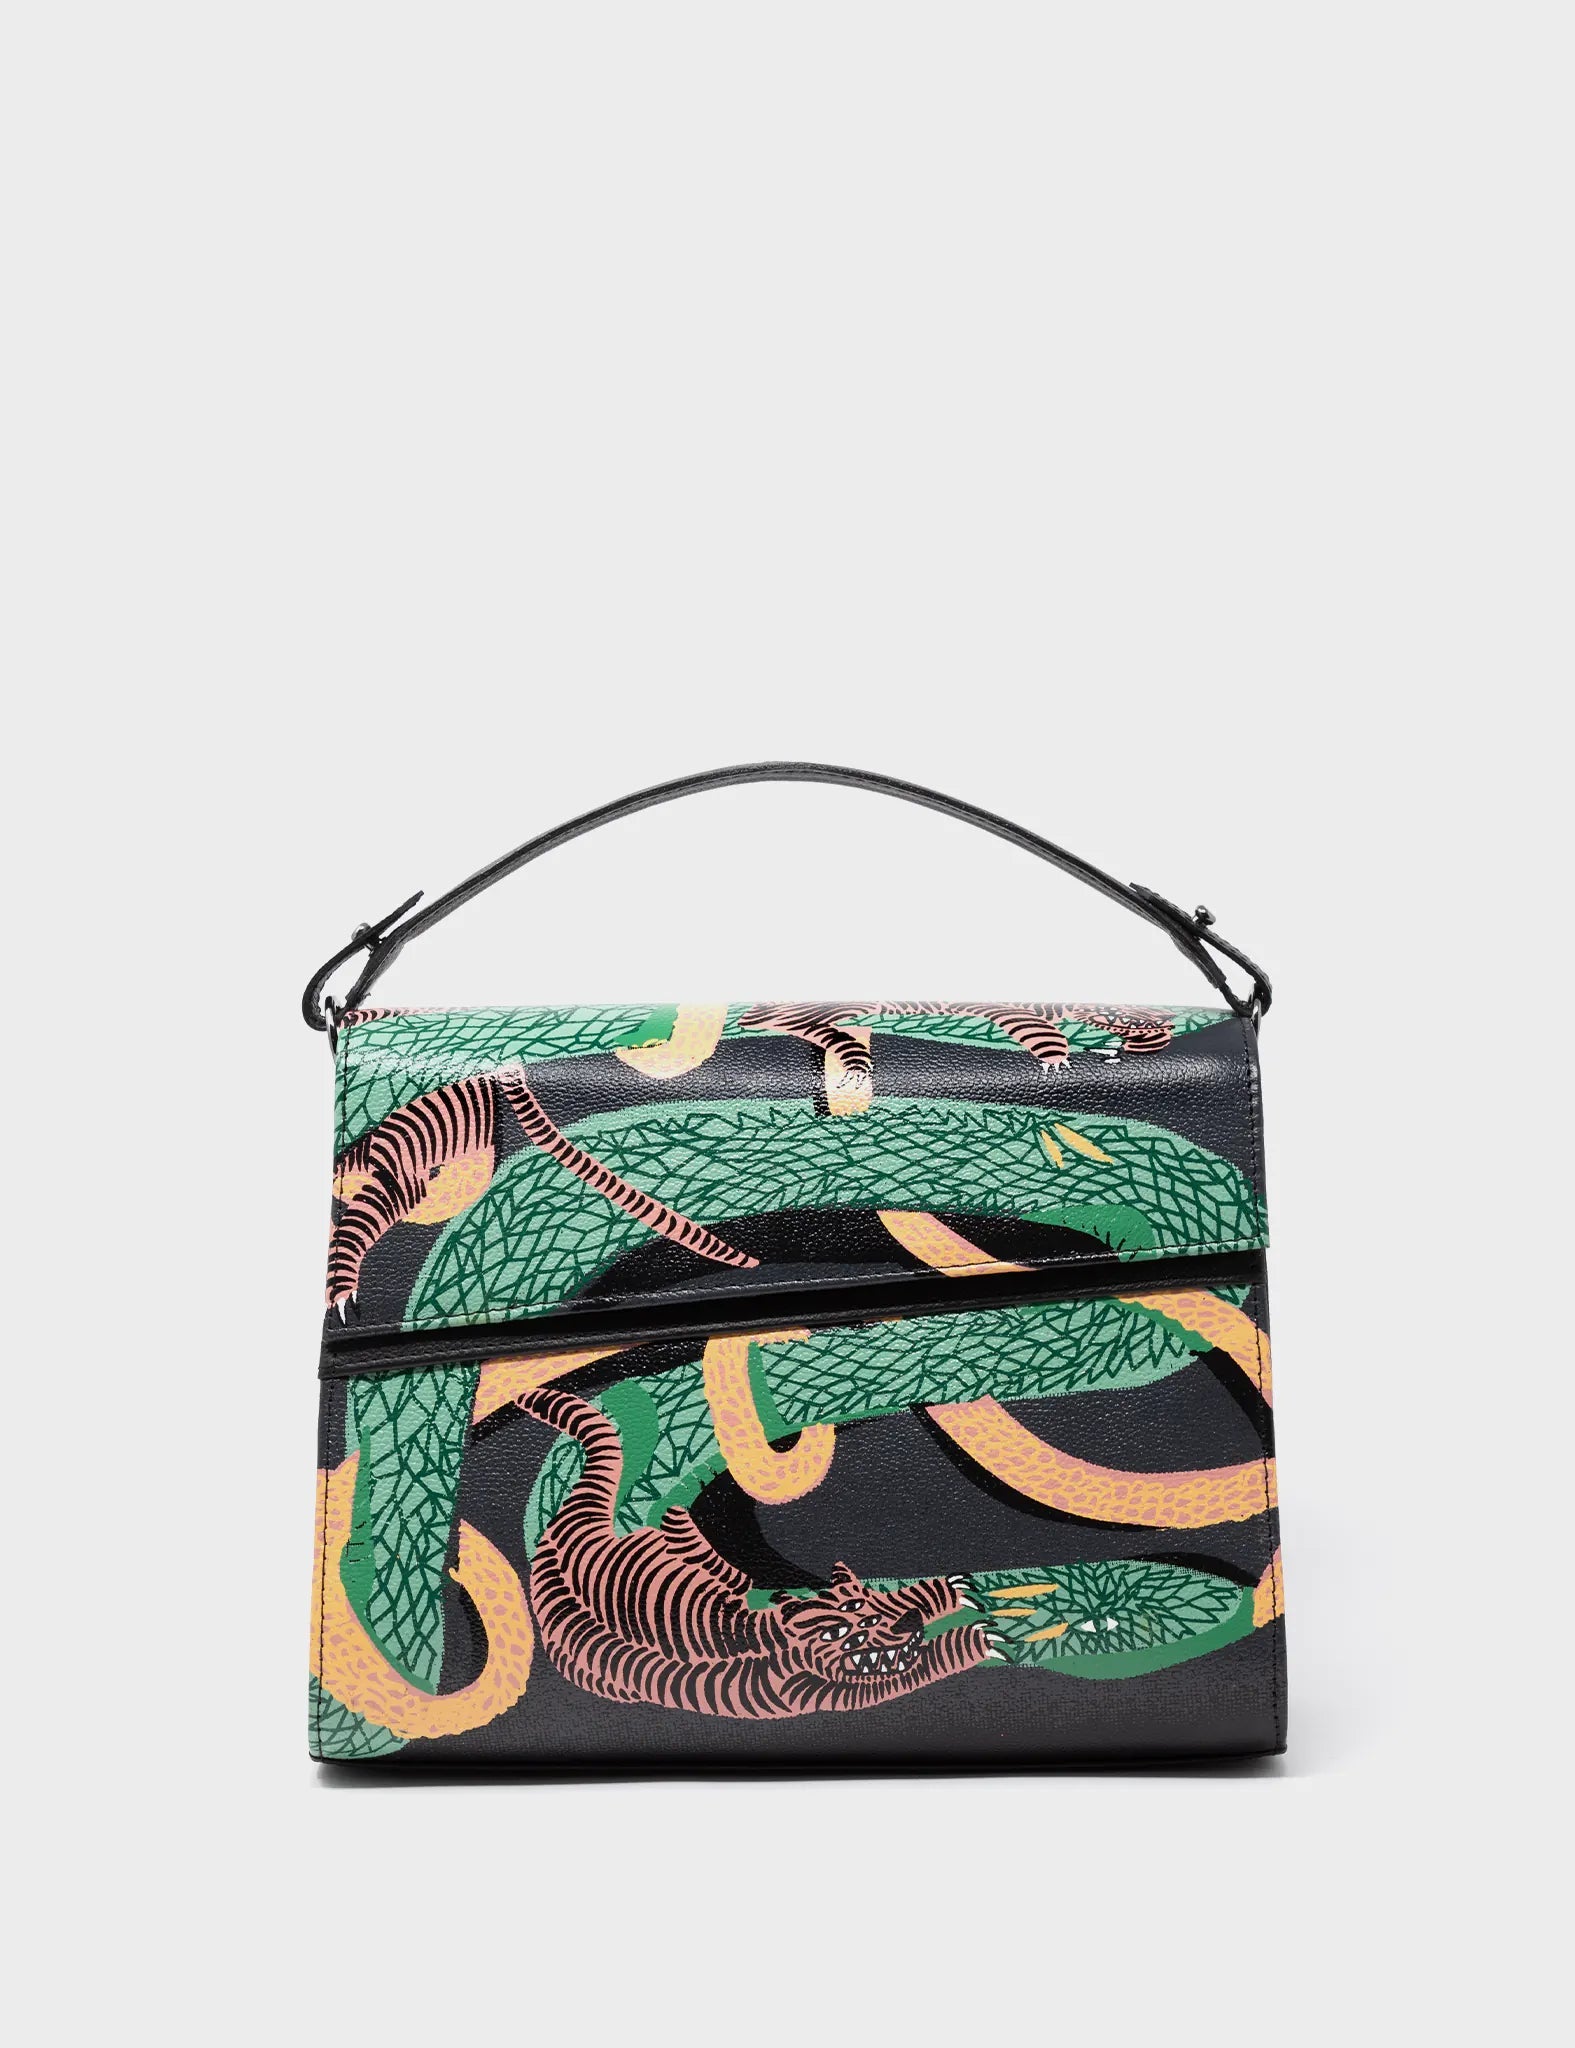 TWISTY Bag Natural Snake | Women's Snake Print Top Handle Bag – Steve Madden